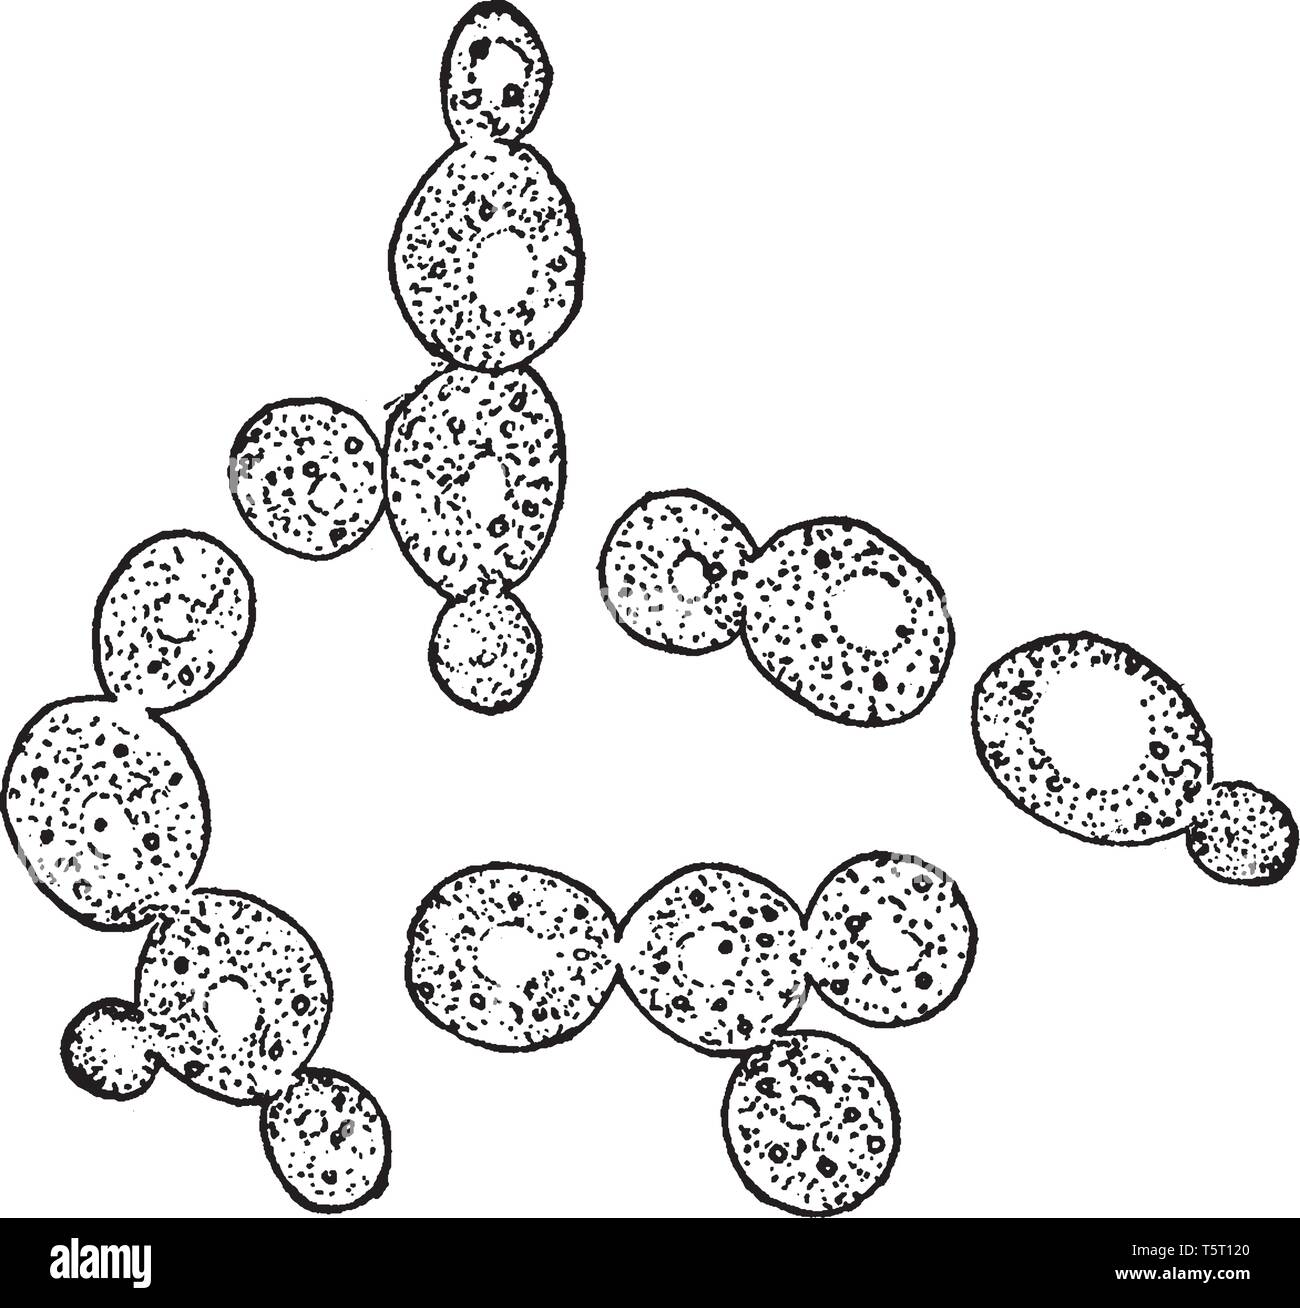 Una foto che mostra le cellule di lievito che sono trovati nel succo di mele, provocando la fermentazione del sidro, vintage disegno della linea o incisione illustratio Illustrazione Vettoriale